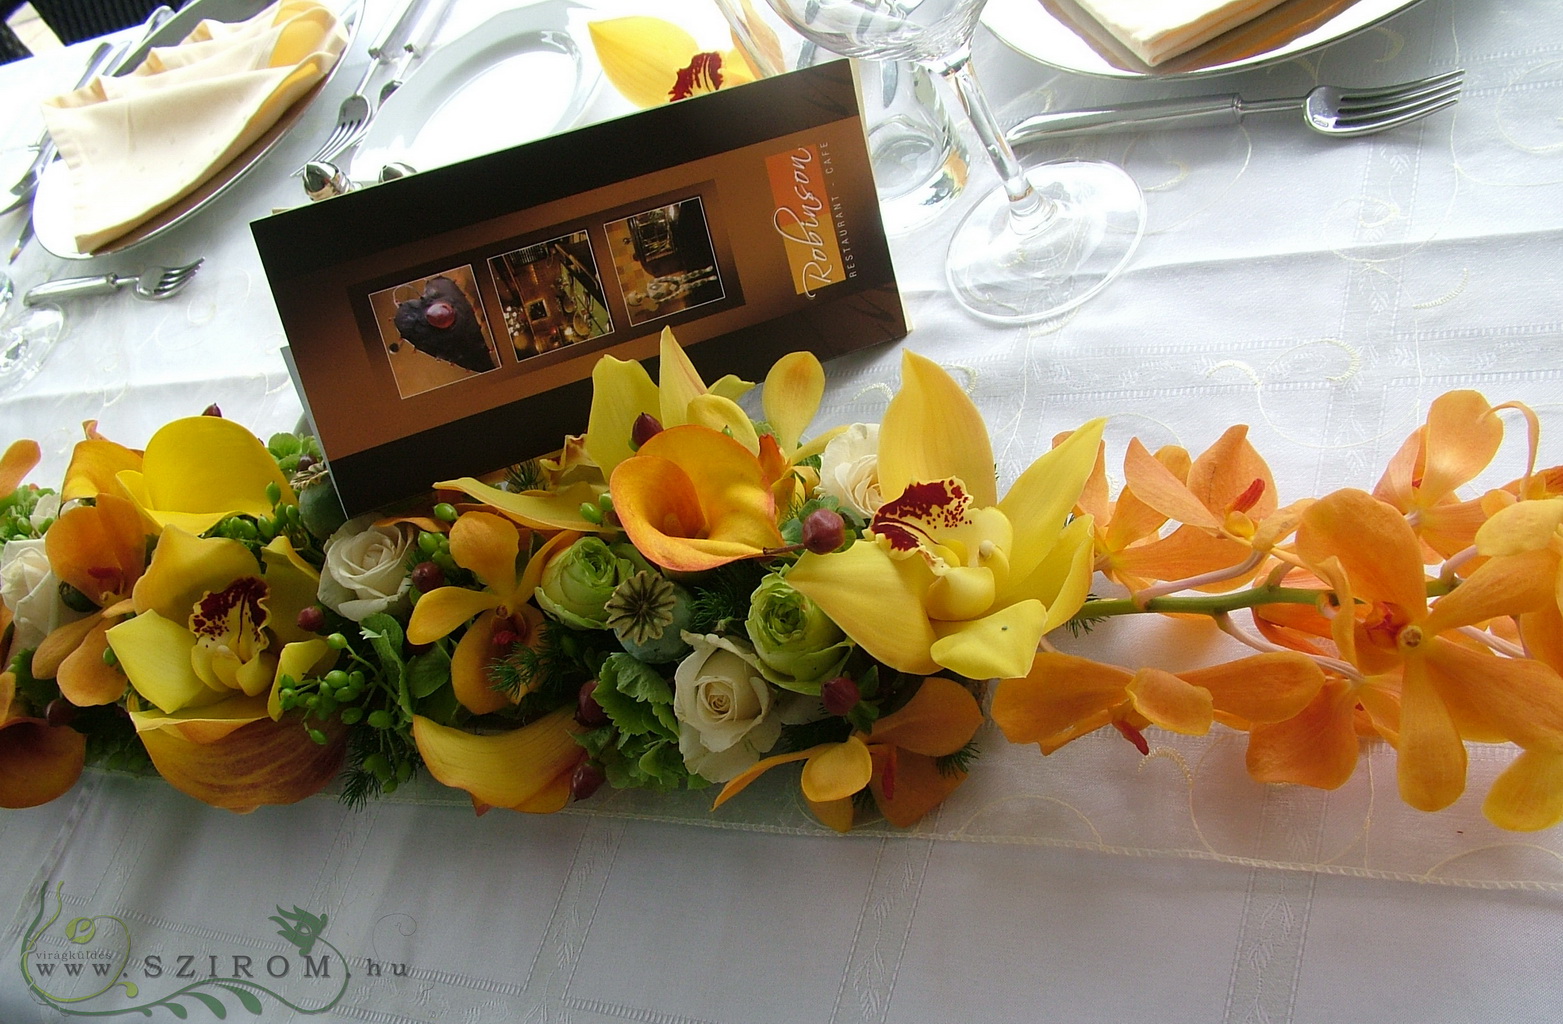 Blumenlieferung nach Budapest - Tischdekoration